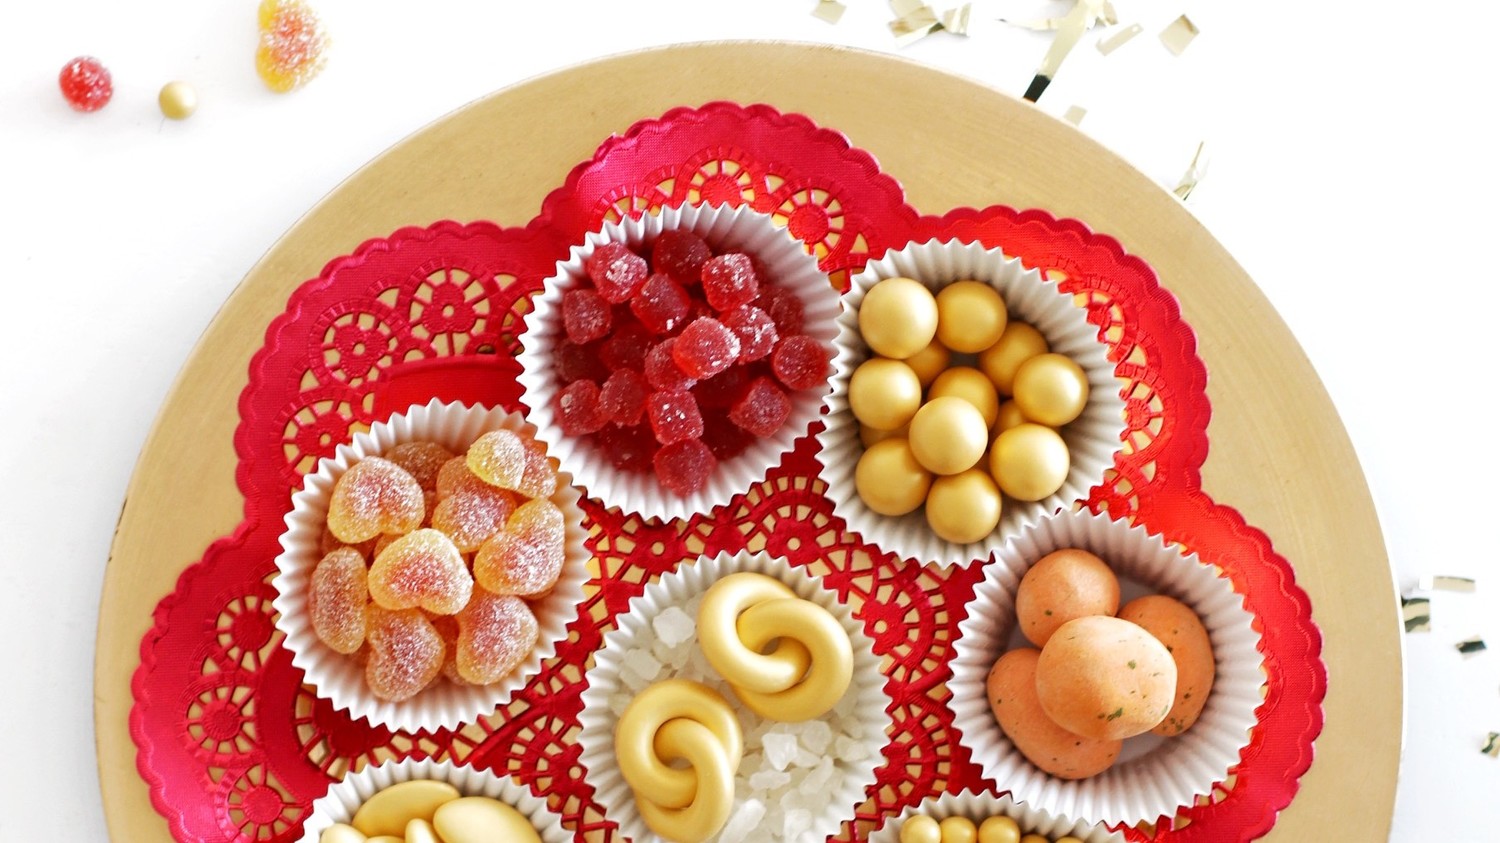 Chinese New Year Candy Tray | Martha Stewart1500 x 843